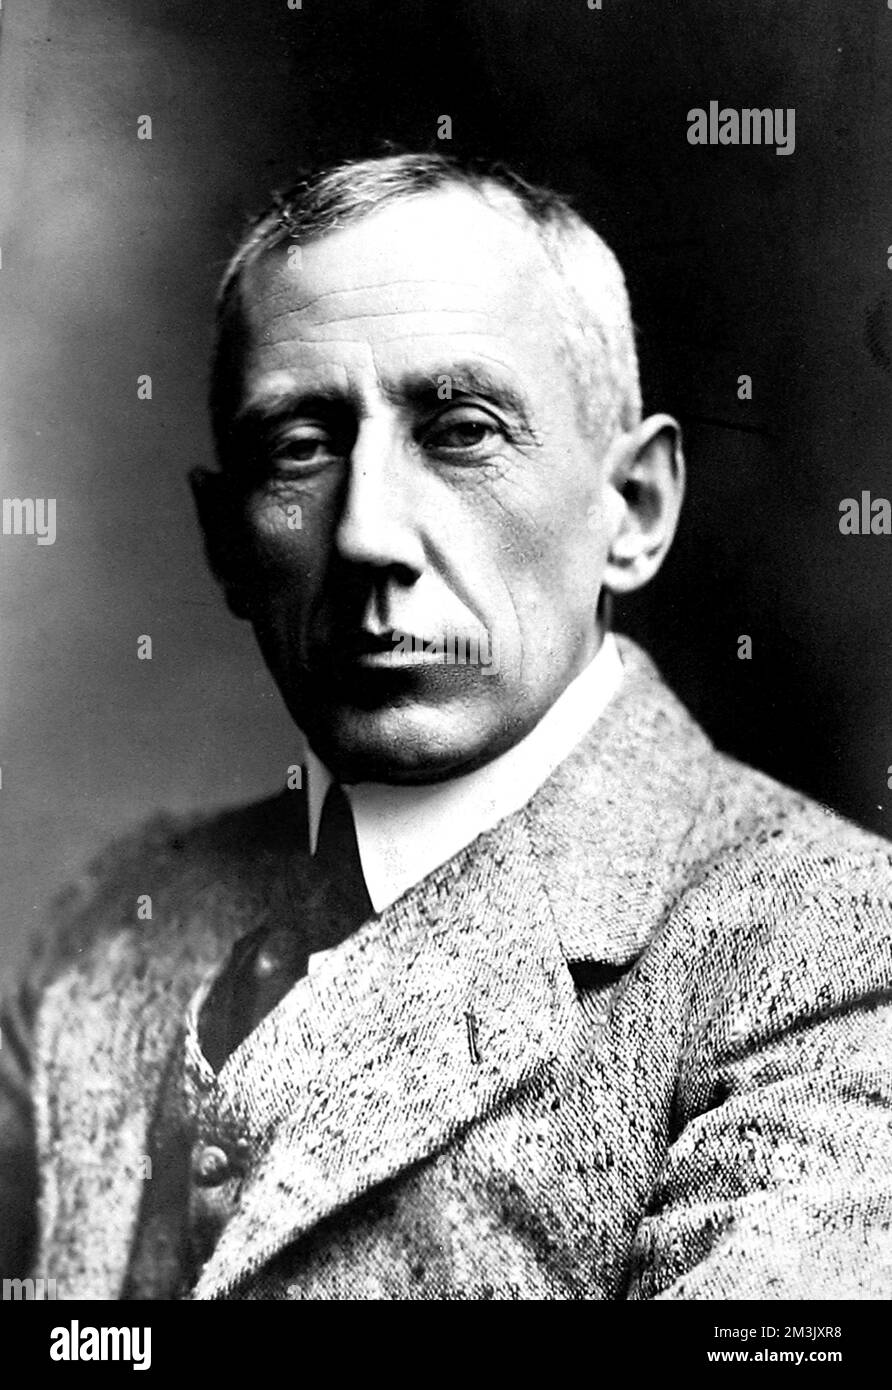 Roald Engelbeth Gravning Amundsen (1872 - 1928), explorateur norvégien qui a été le premier homme à naviguer dans le passage du Nord-Ouest et à atteindre le pôle Sud. Banque D'Images